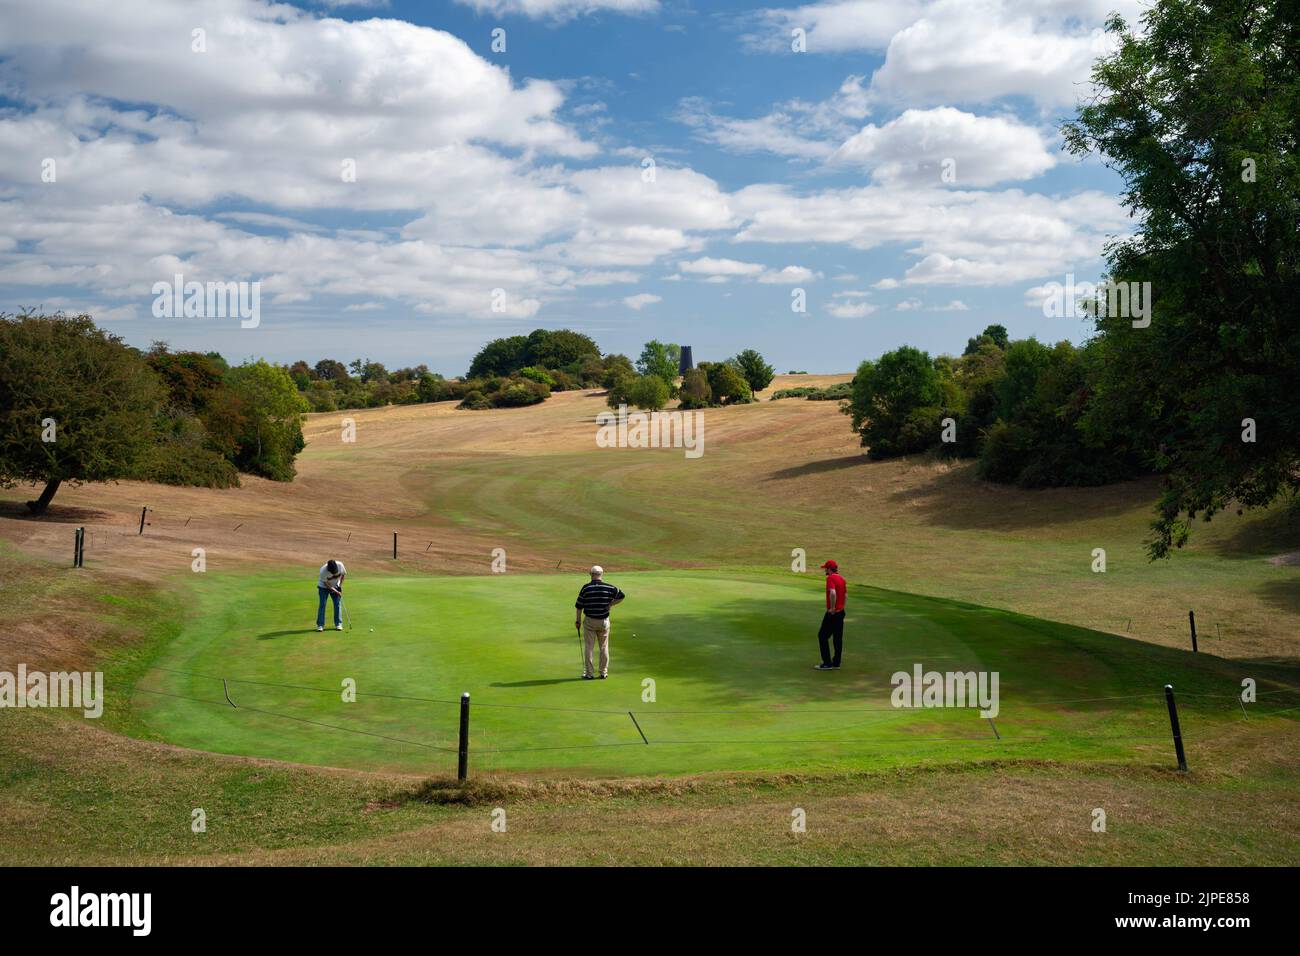 Los golfistas están rodeados de praderas resecadas que juegan en putting green recién regadas durante la ola de calor extrema en Westwood, Beverley, Reino Unido. Foto de stock